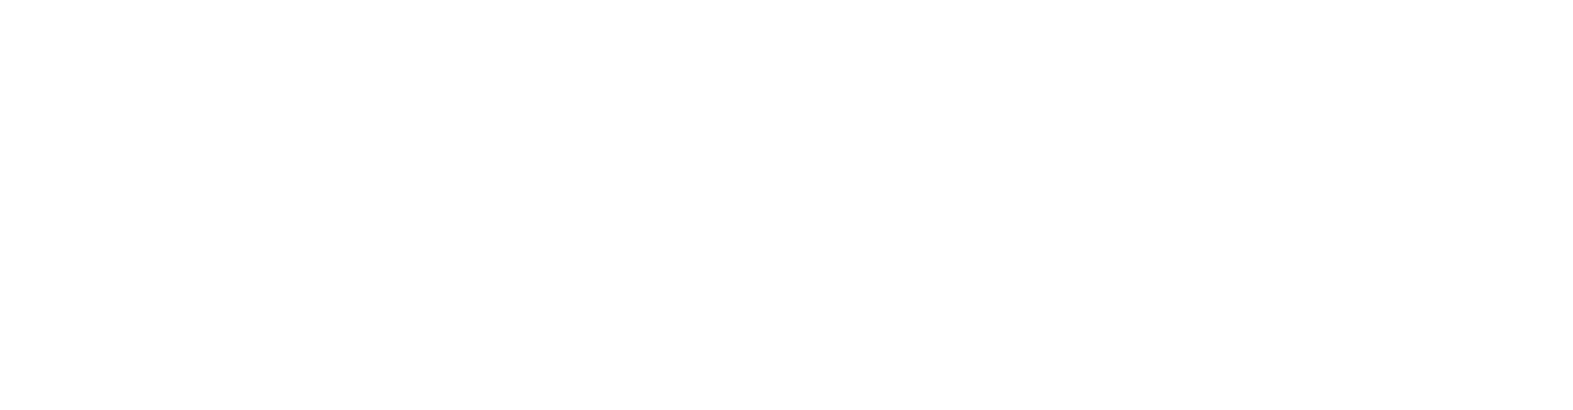 Gladstone Commercial logo for dark backgrounds (transparent PNG)